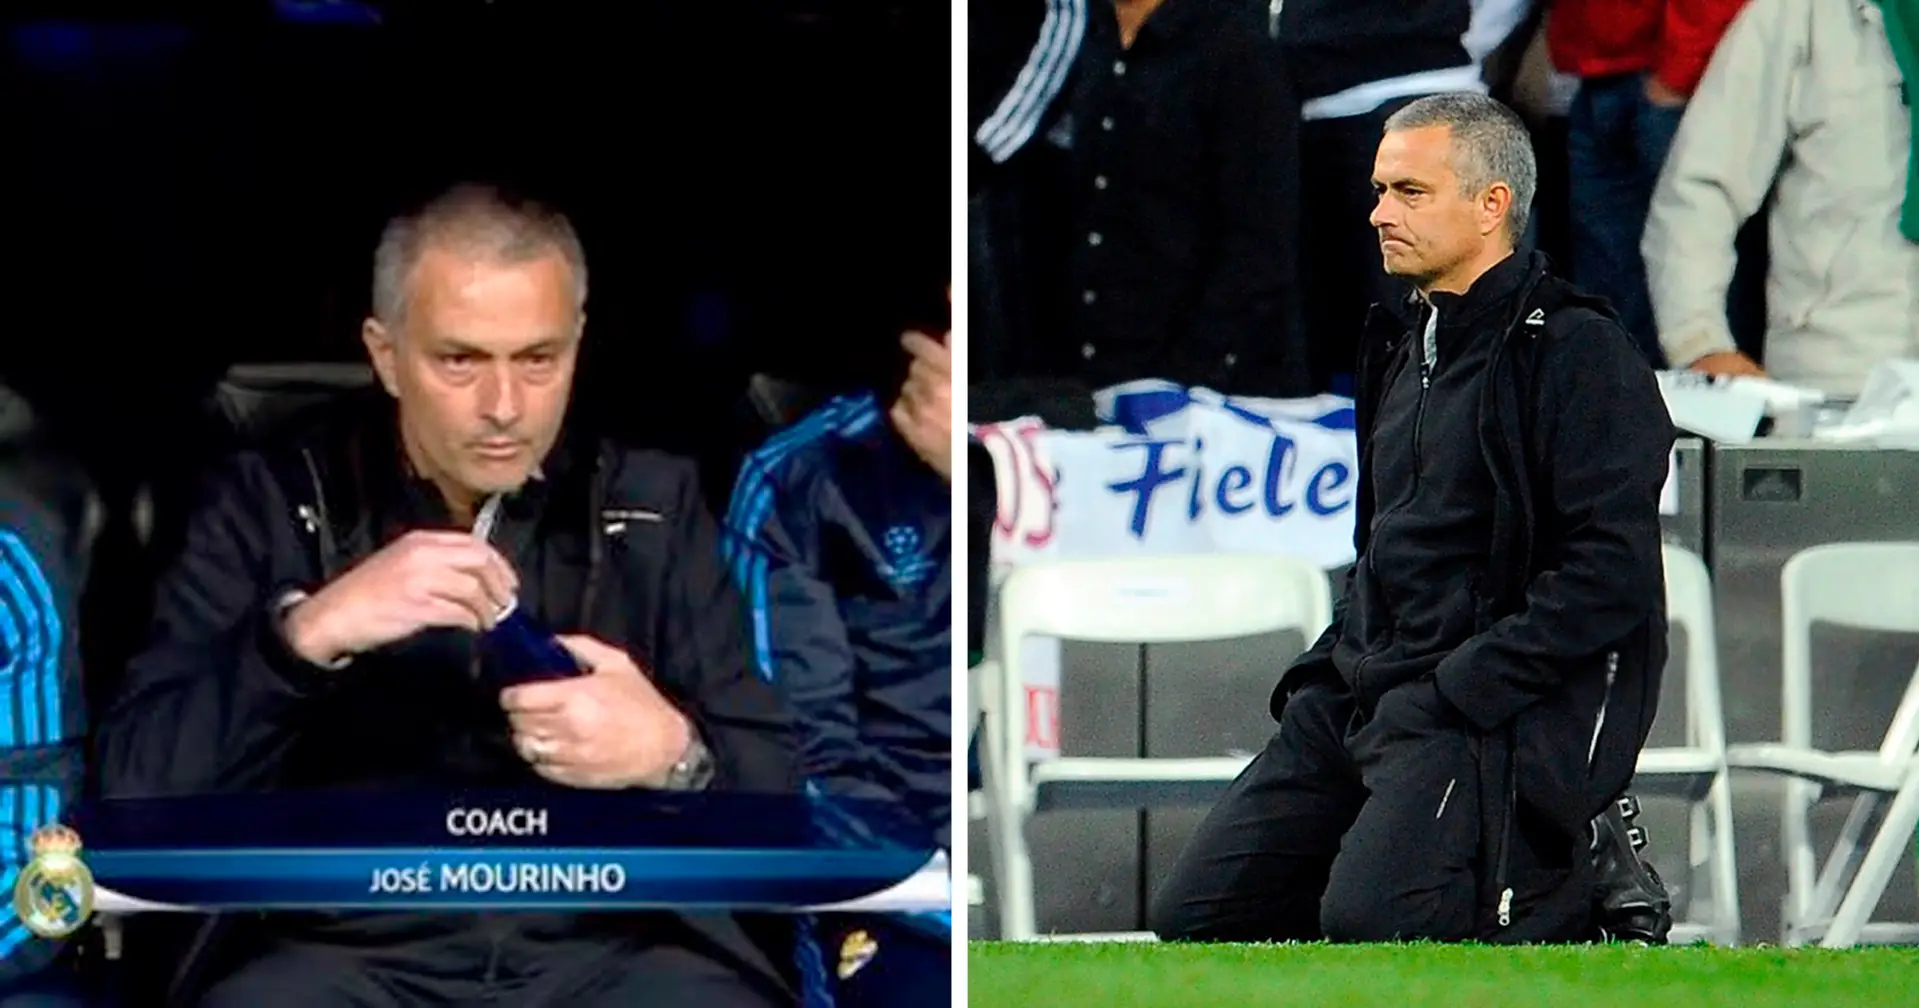 "La più dolorosa della mia carriera": Mourinho rivela l'unica sconfitta che lo ha fatto piangere